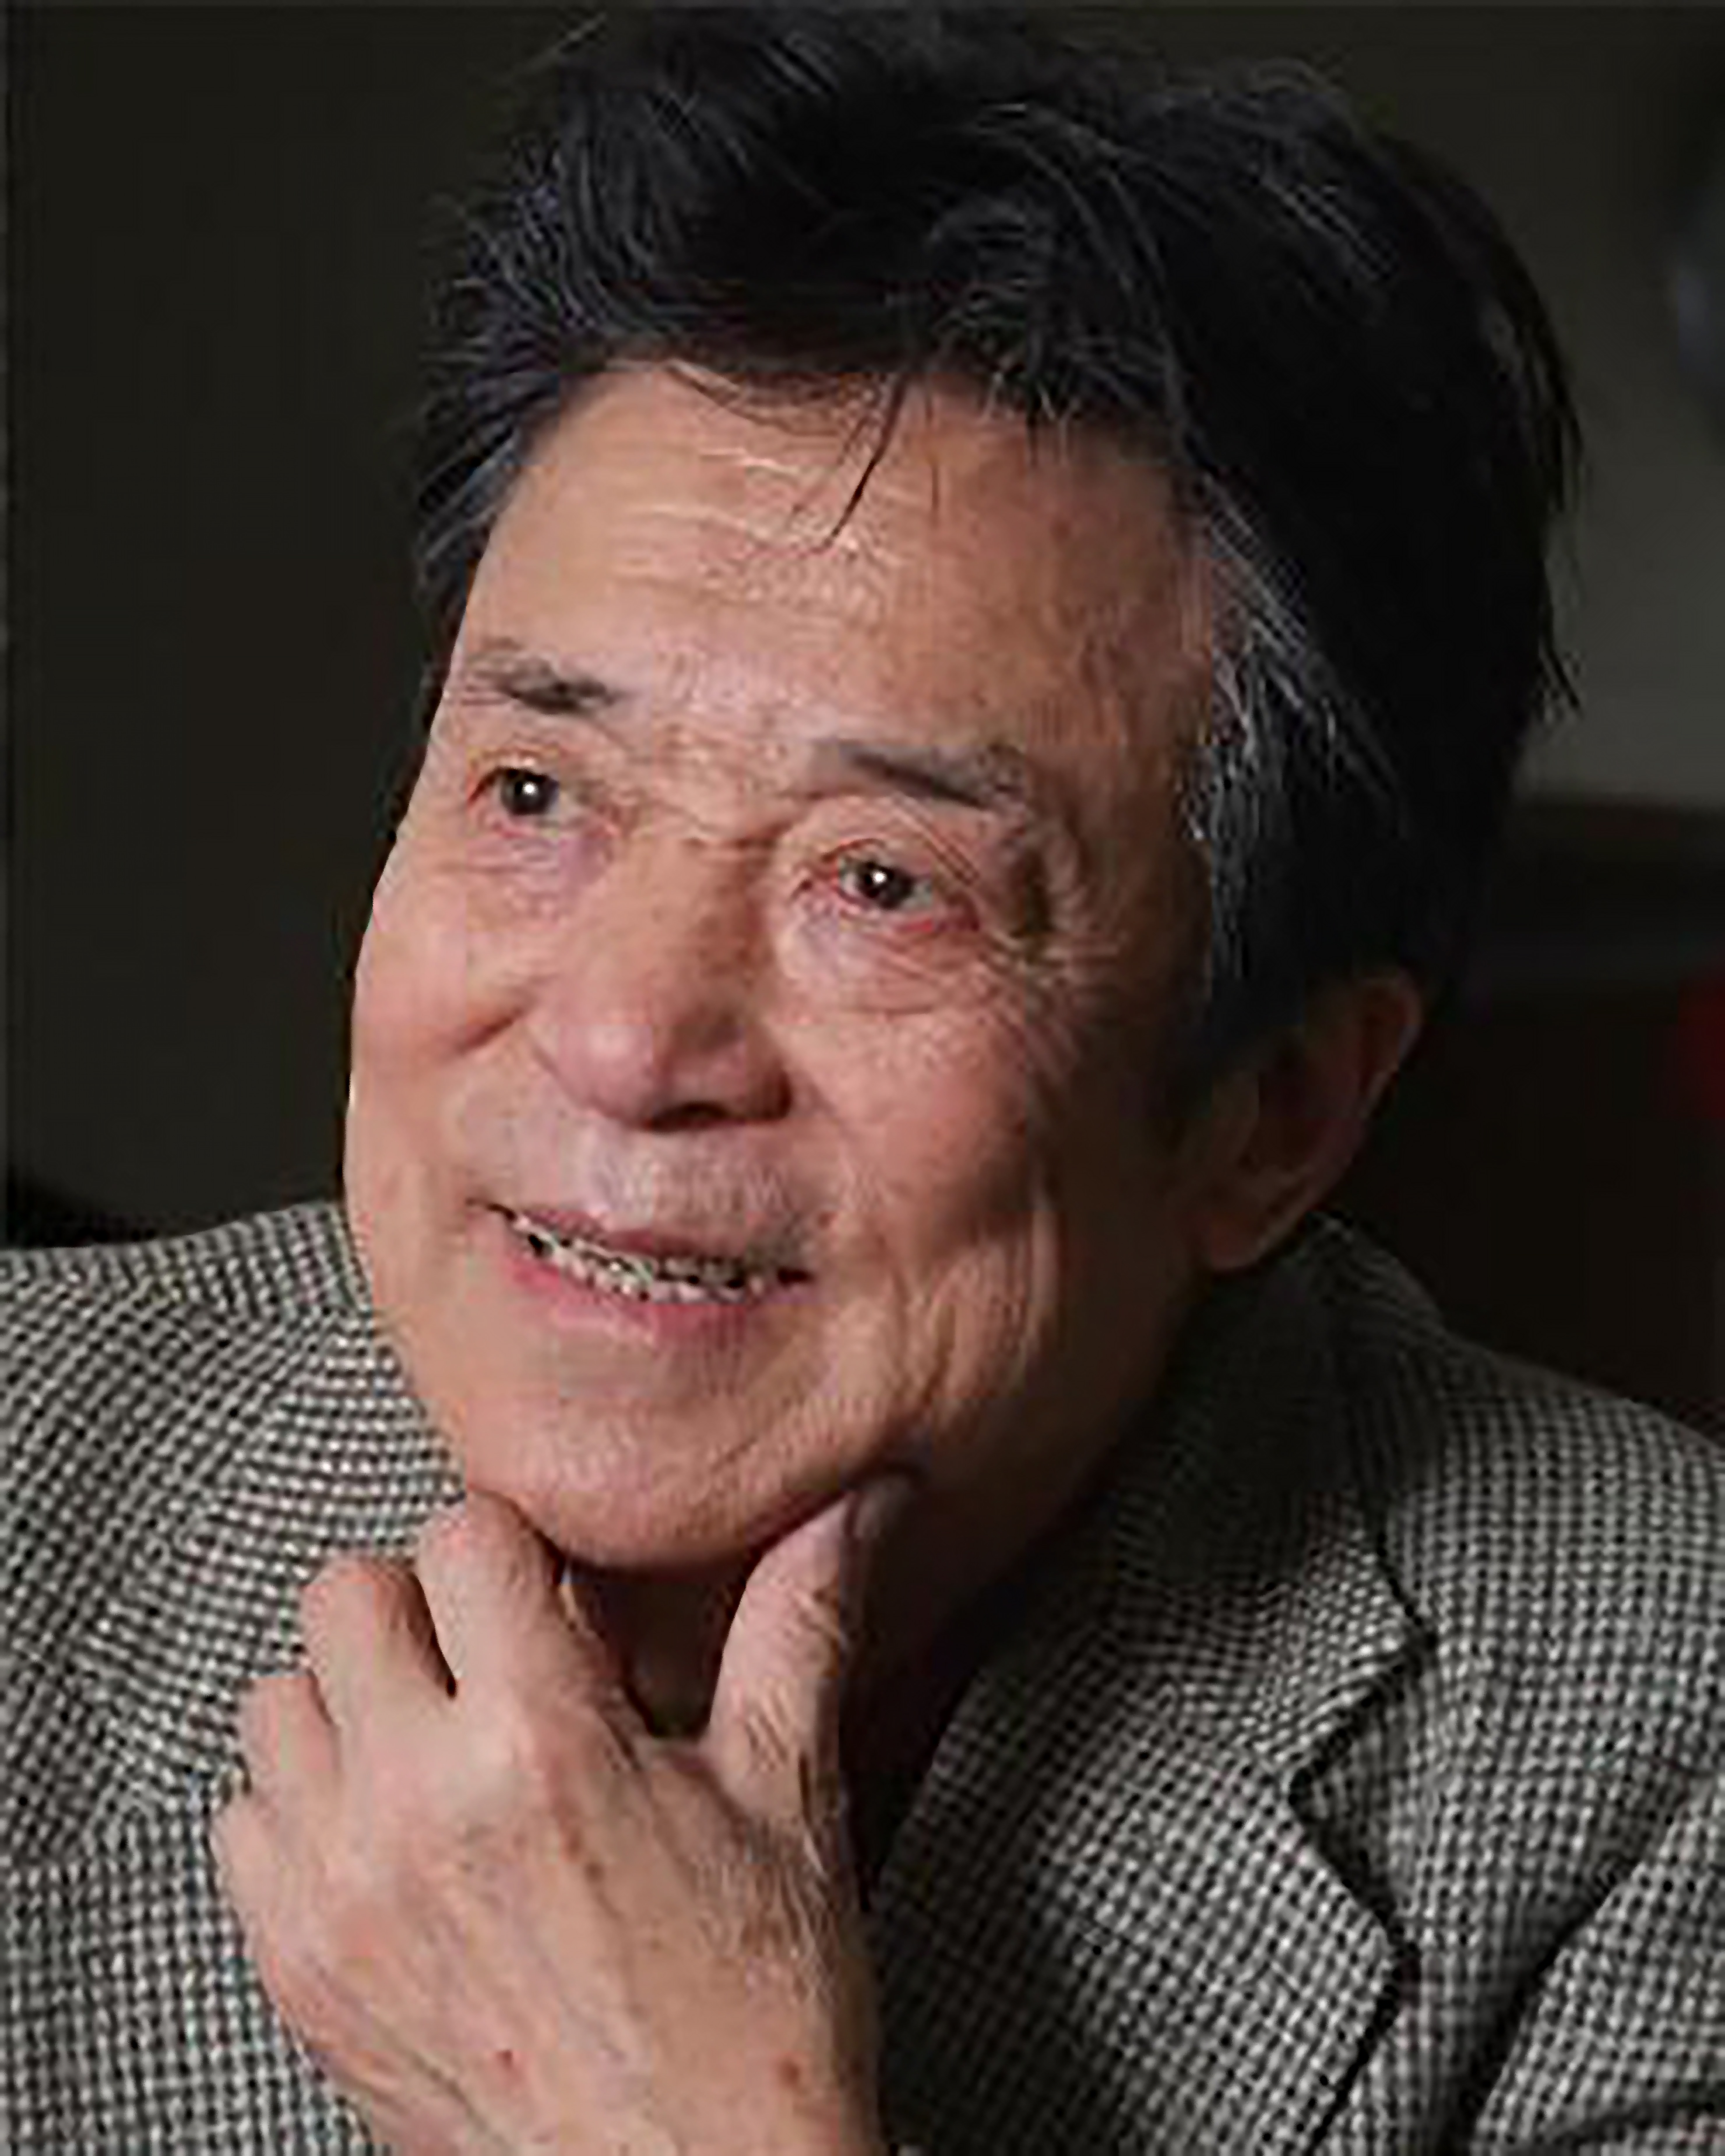 原创91岁高龄的歌唱家李光羲,精美书法作品欣赏,用笔精准字体秀丽